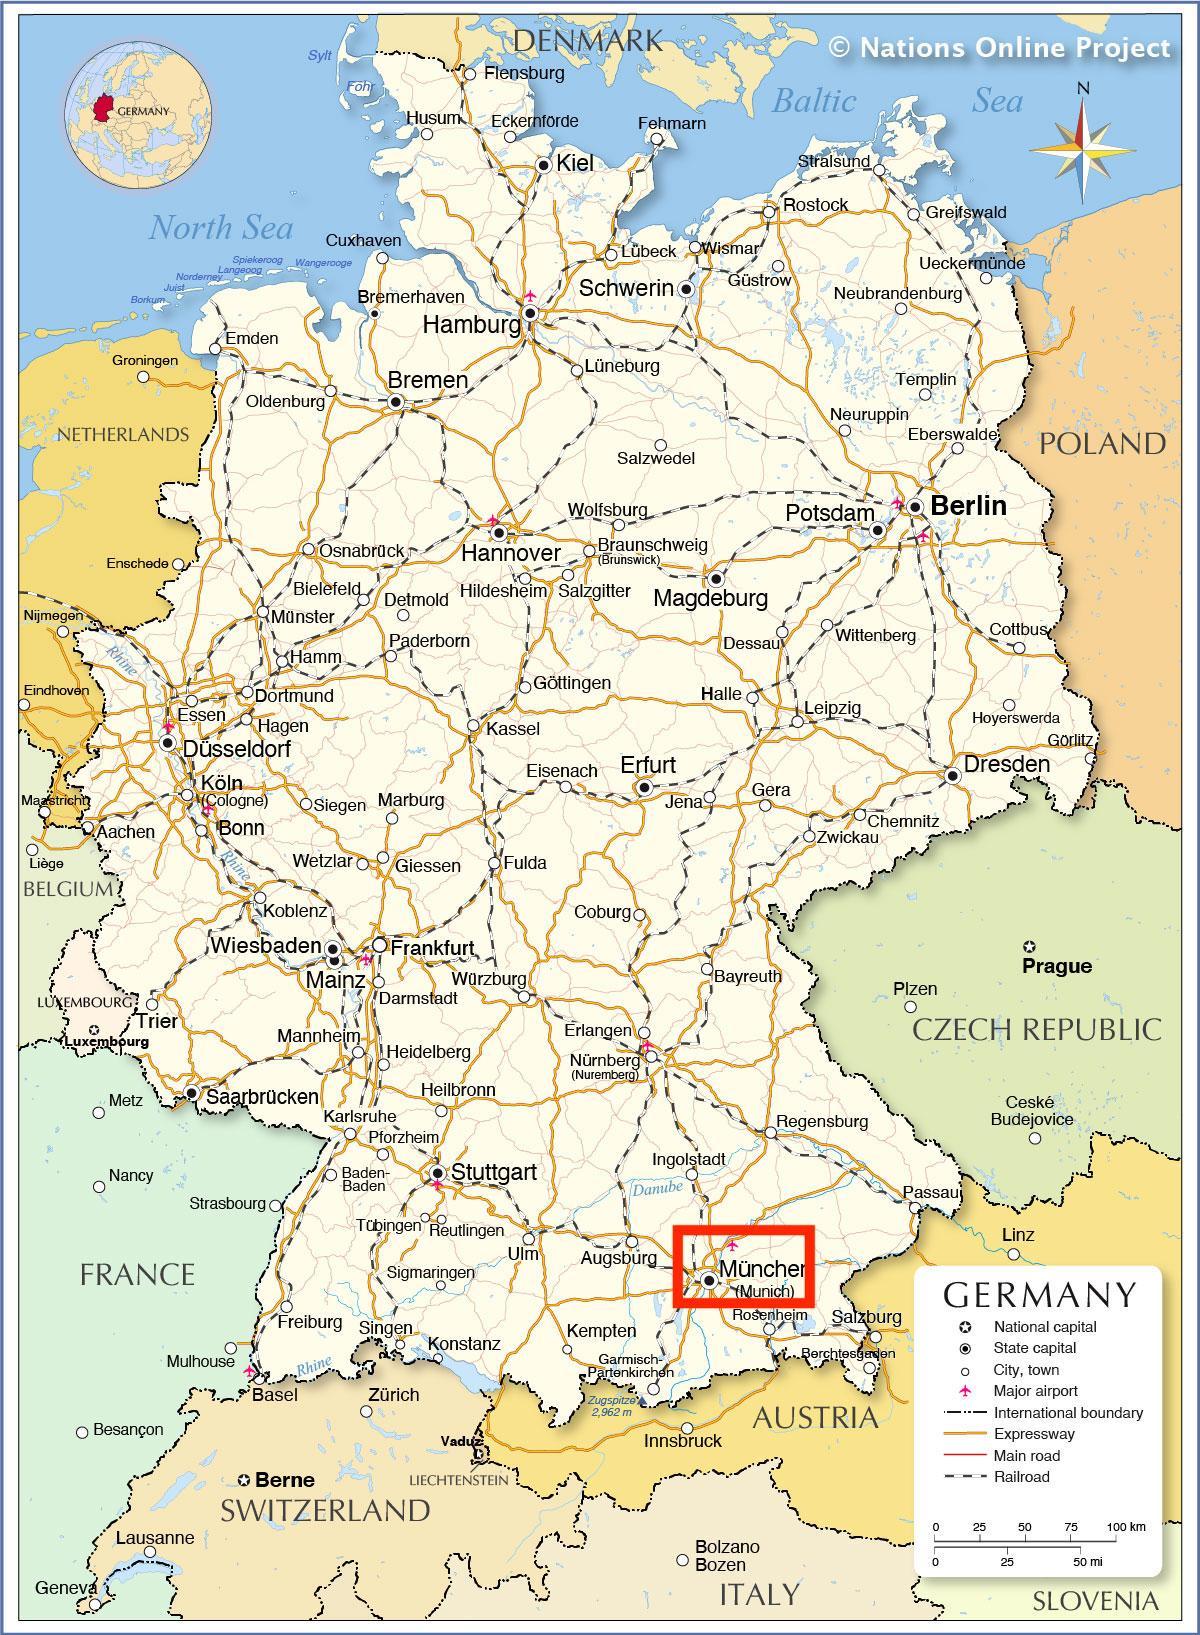 München op de kaart van Beieren - Duitsland